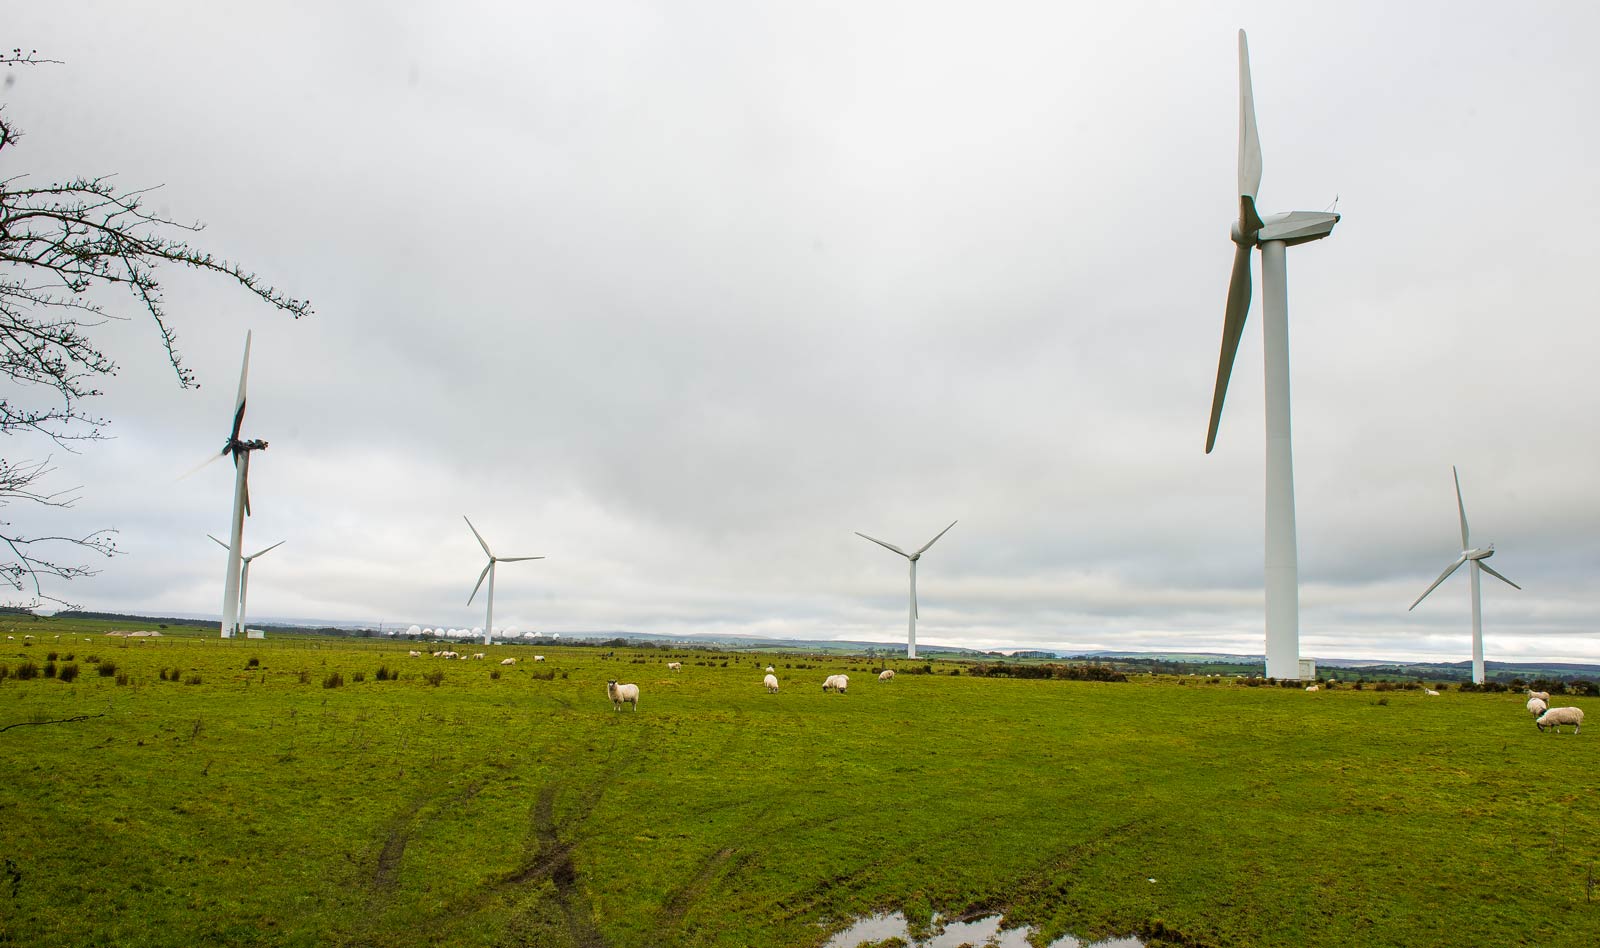 Knabs Ridge wind farm, near Harrogate